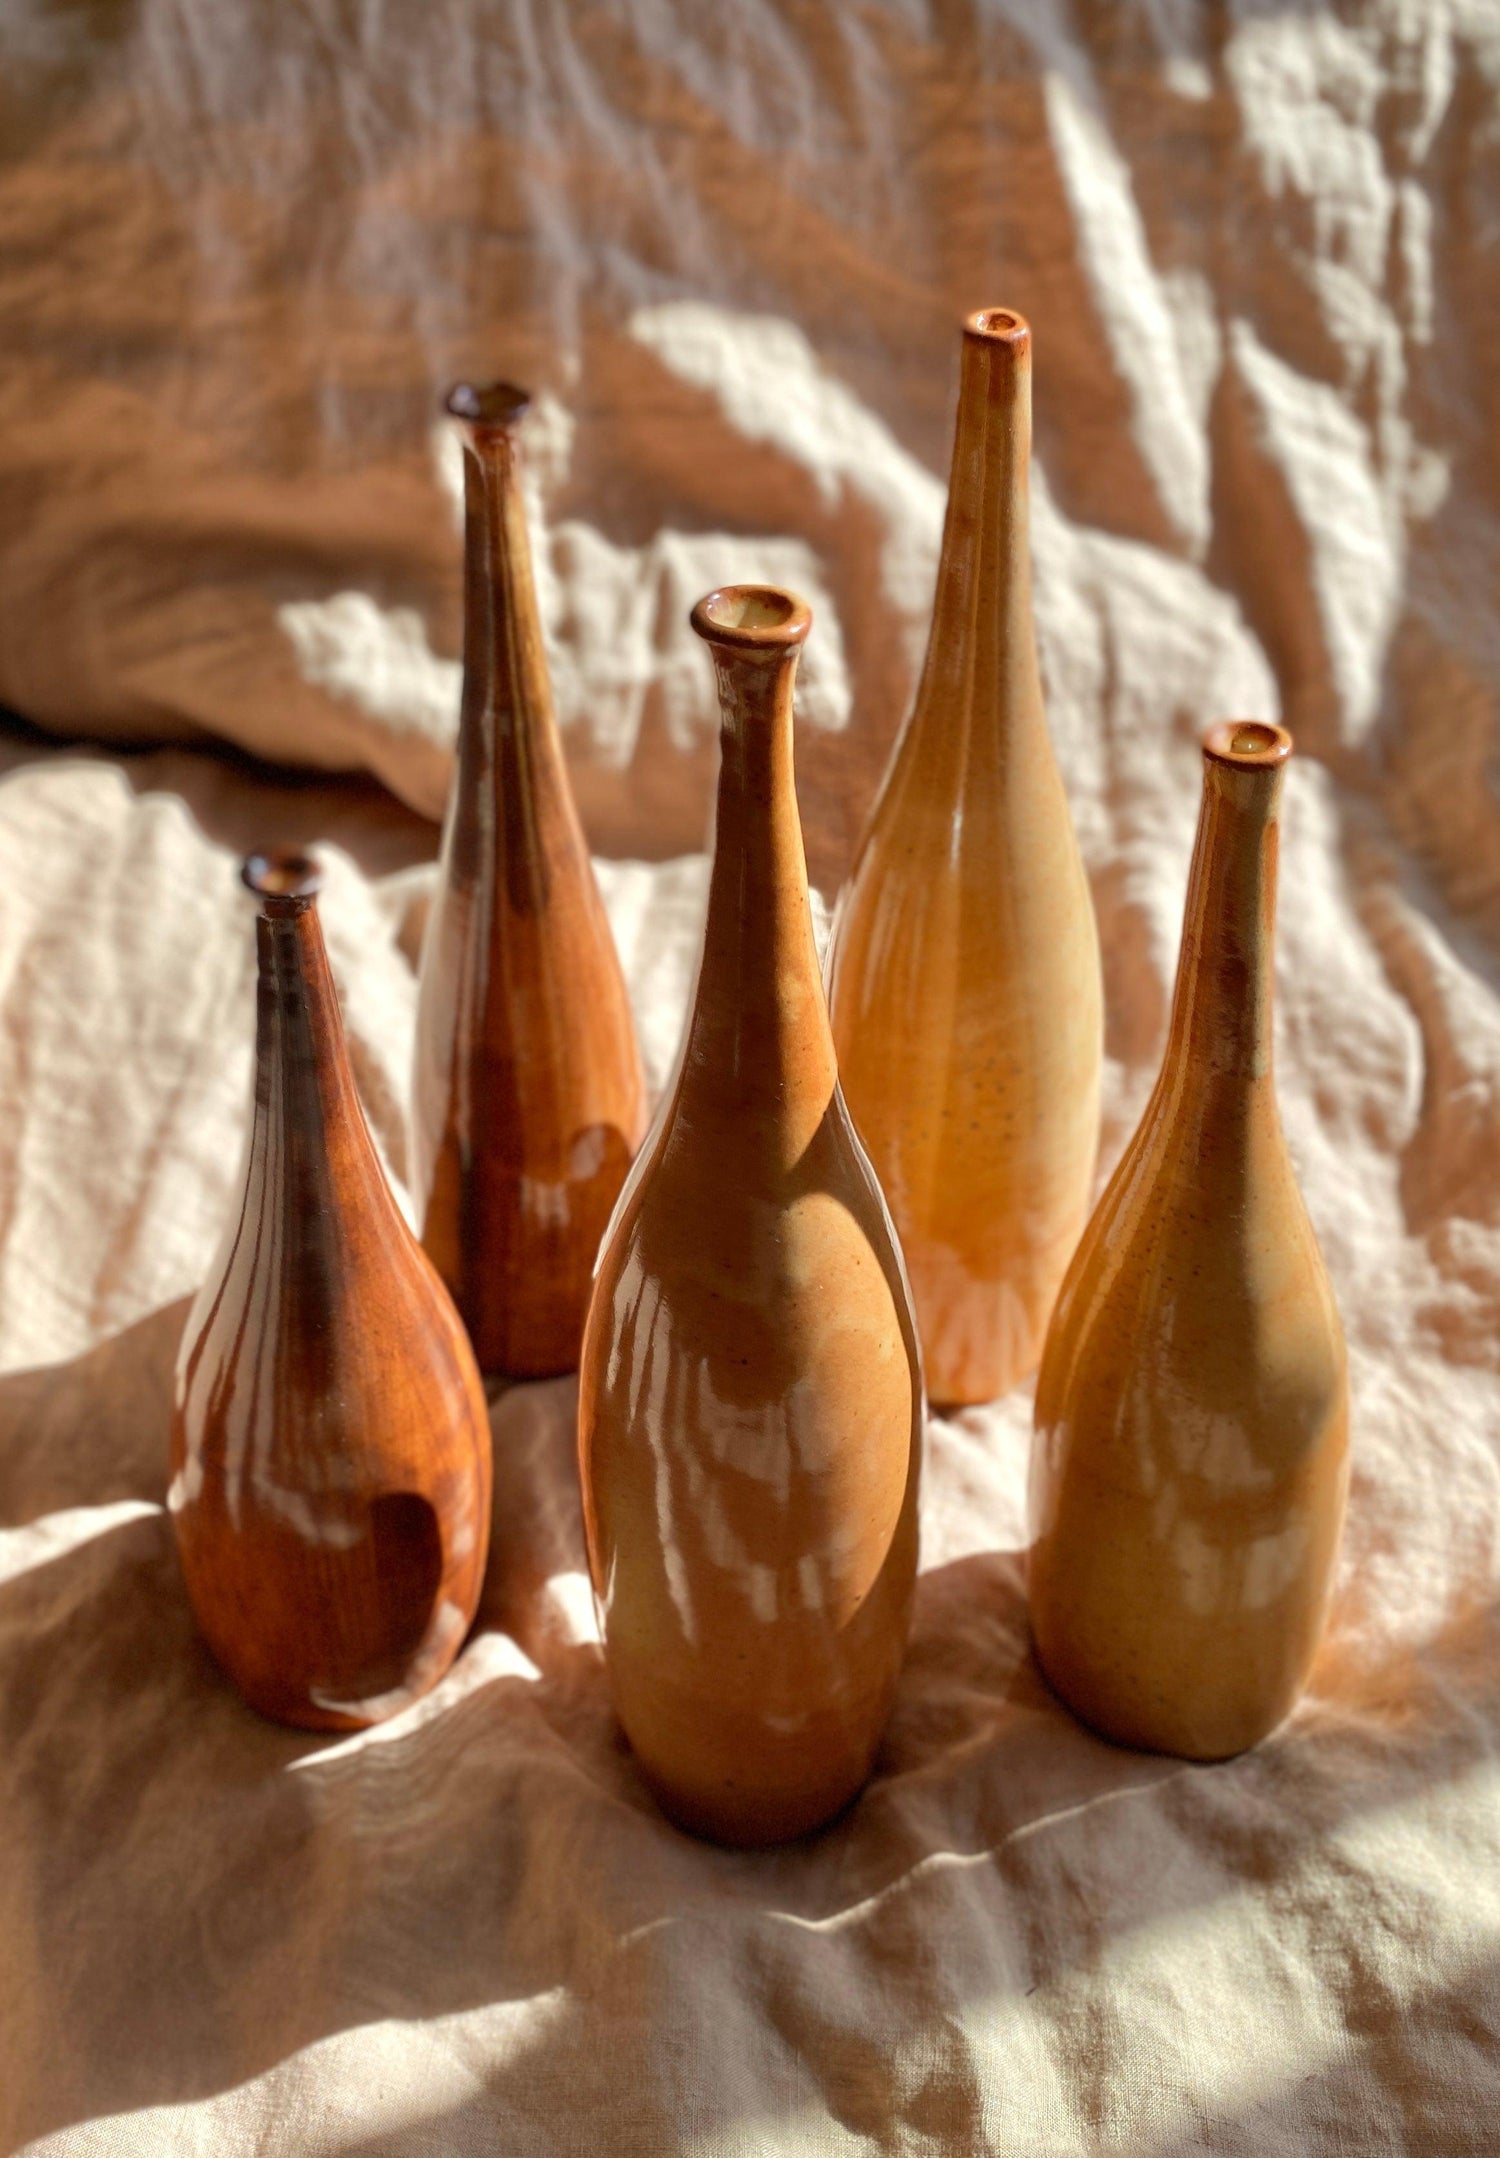 Shino rustic decorative bottle No. 16 - Dana Chieco Studio